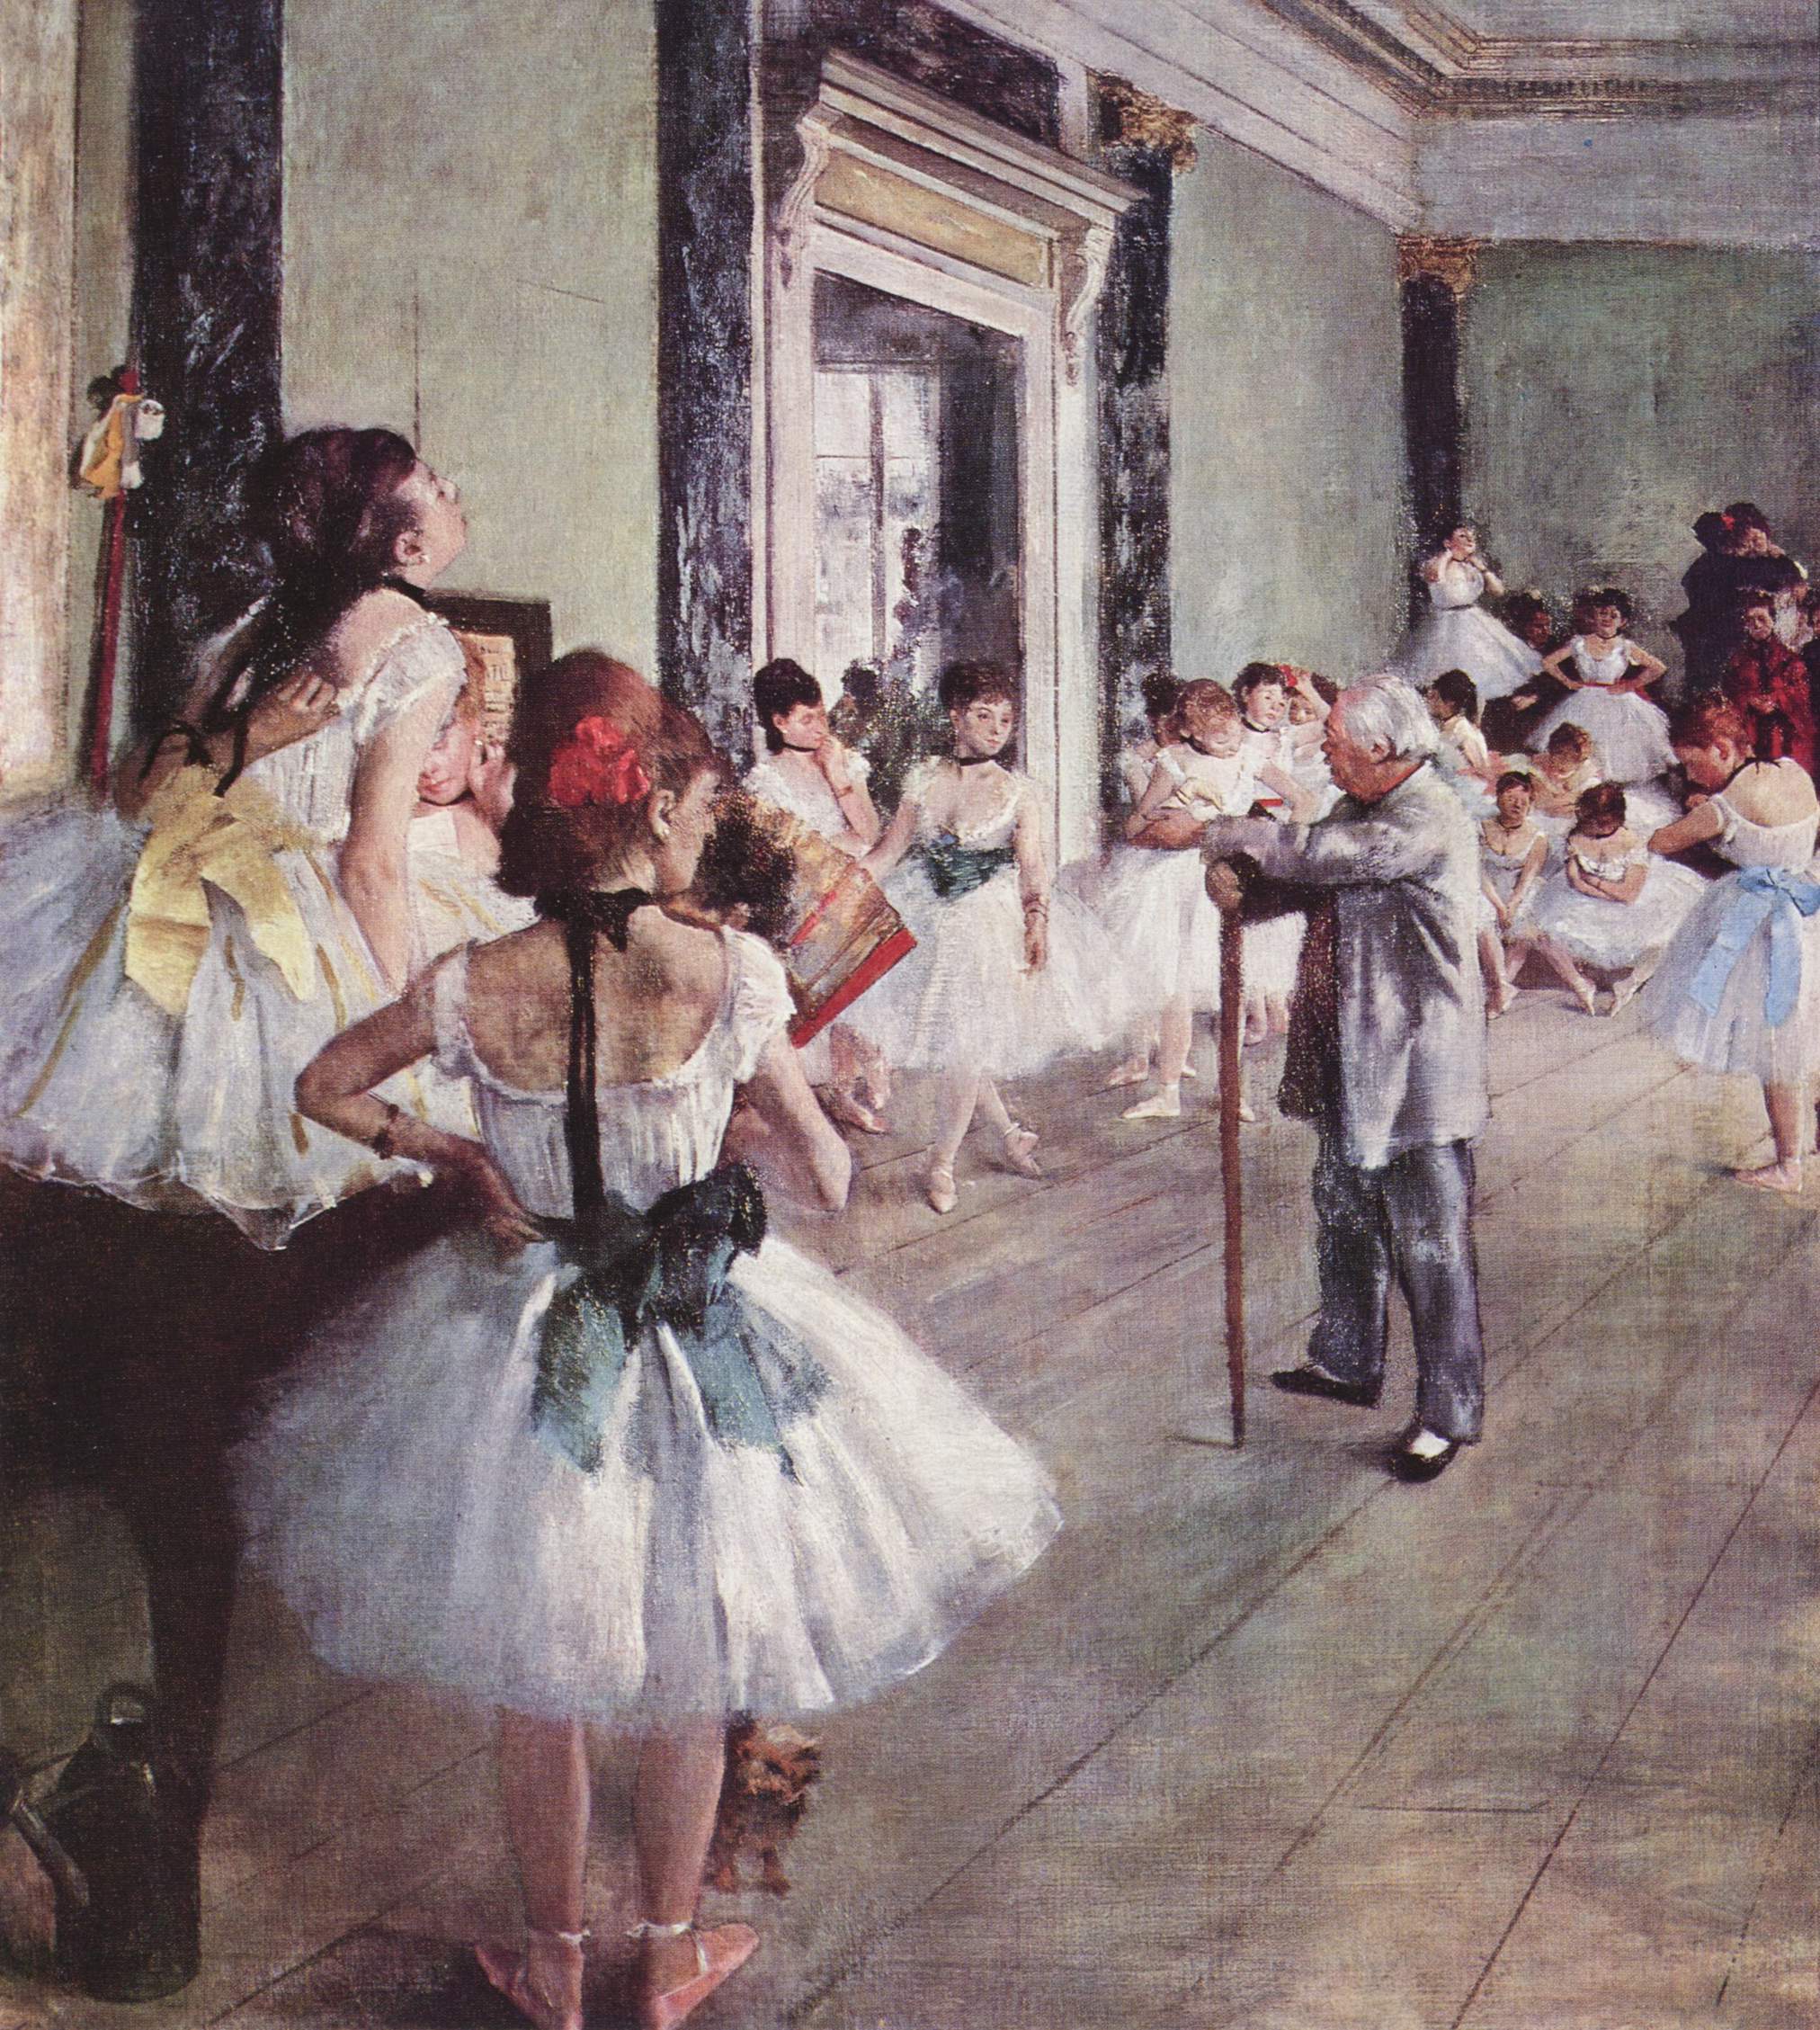 La clase de baile by Edgar Degas - 1875 - 85 × 75 cm Musée d'Orsay